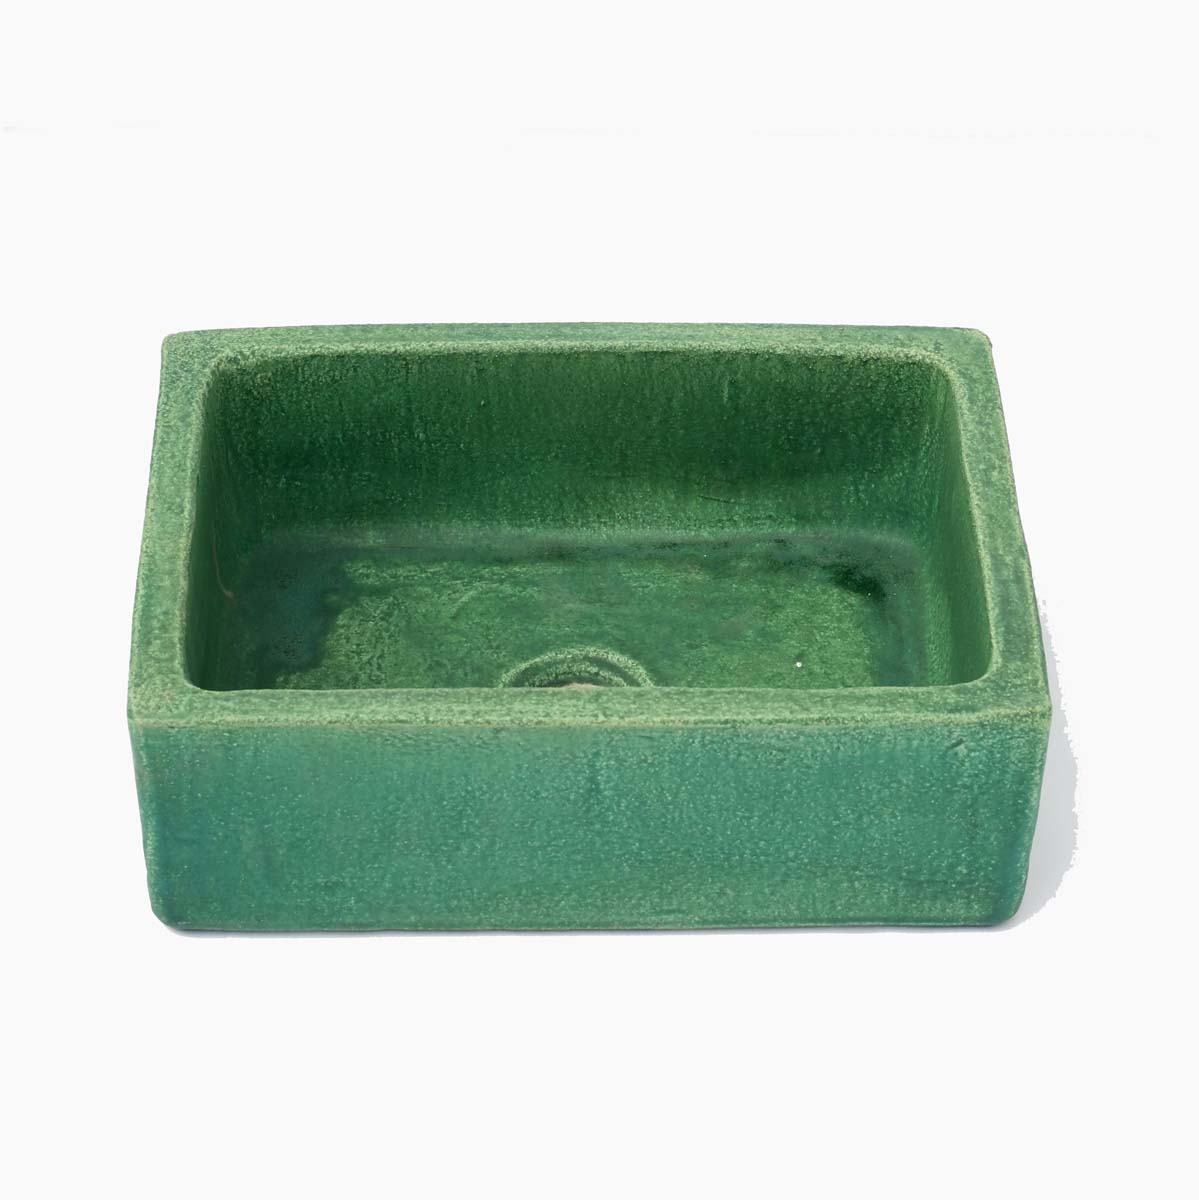 כיור אמבטיה קטן בצבע ירוק